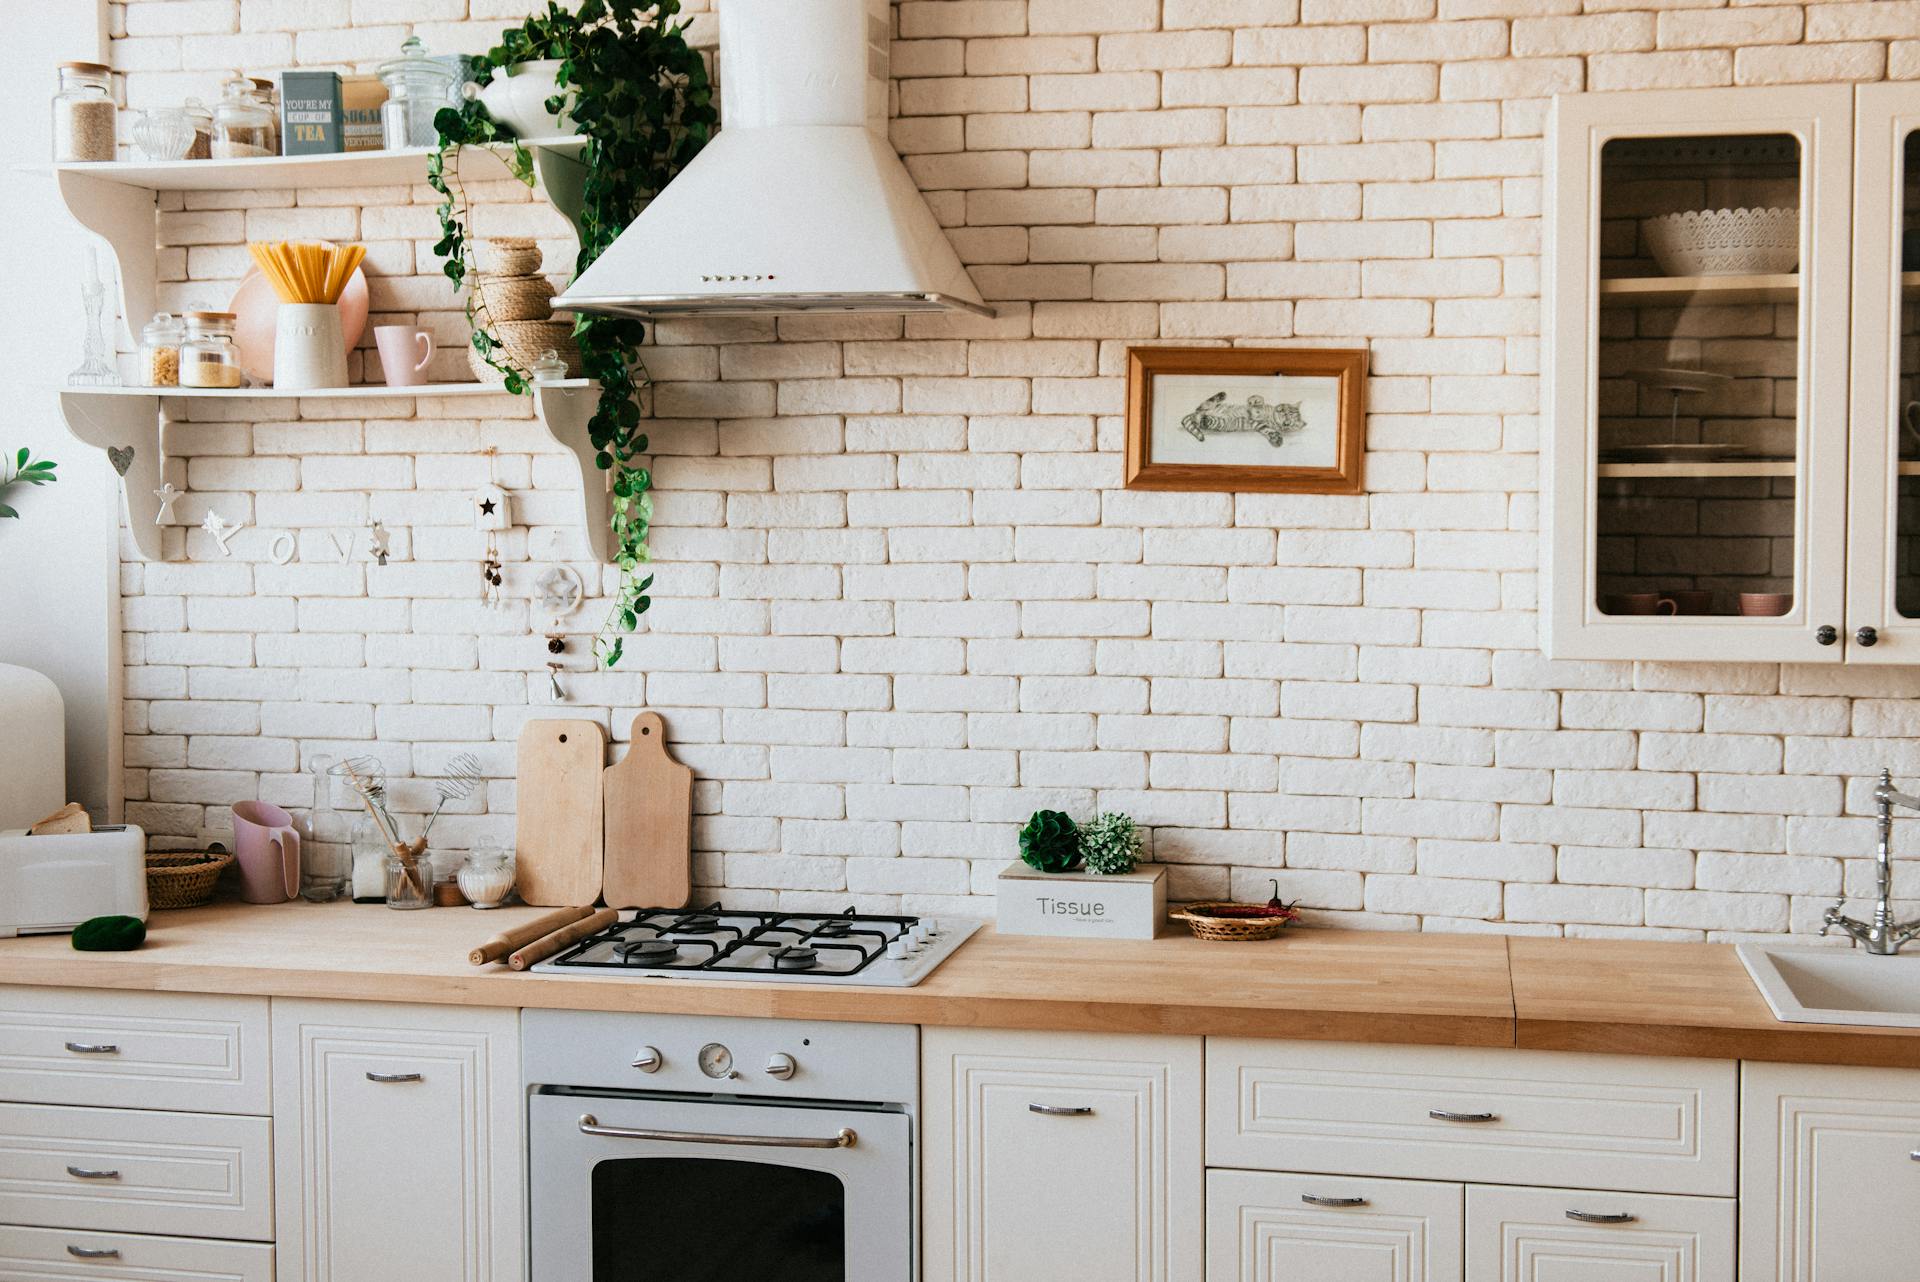 Una cocina limpia | Fuente: Pexels